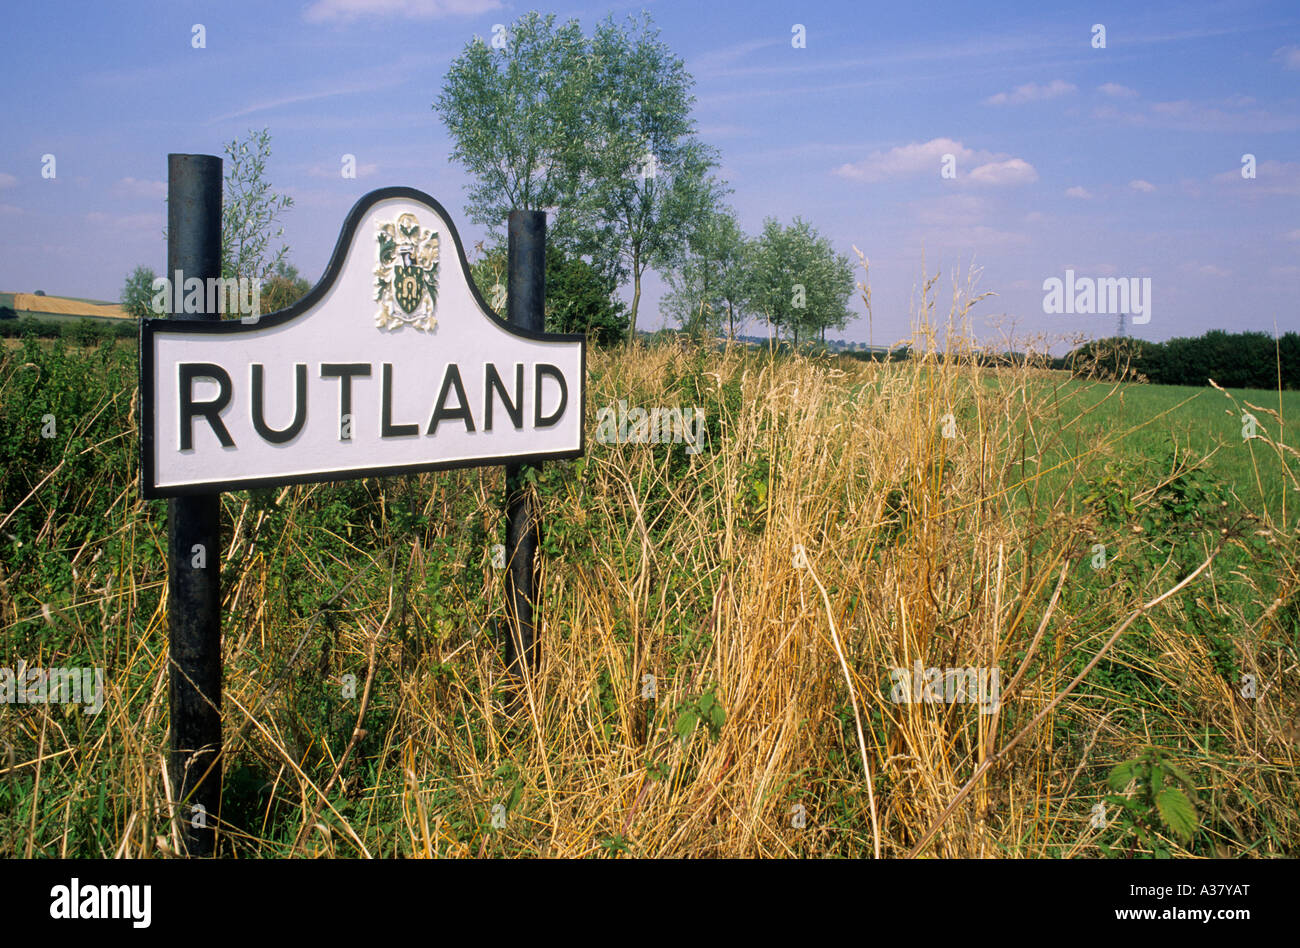 Rutland county Grenze zu signieren, am Straßenrand Schilder, Wegweiser, England, UK Stockfoto